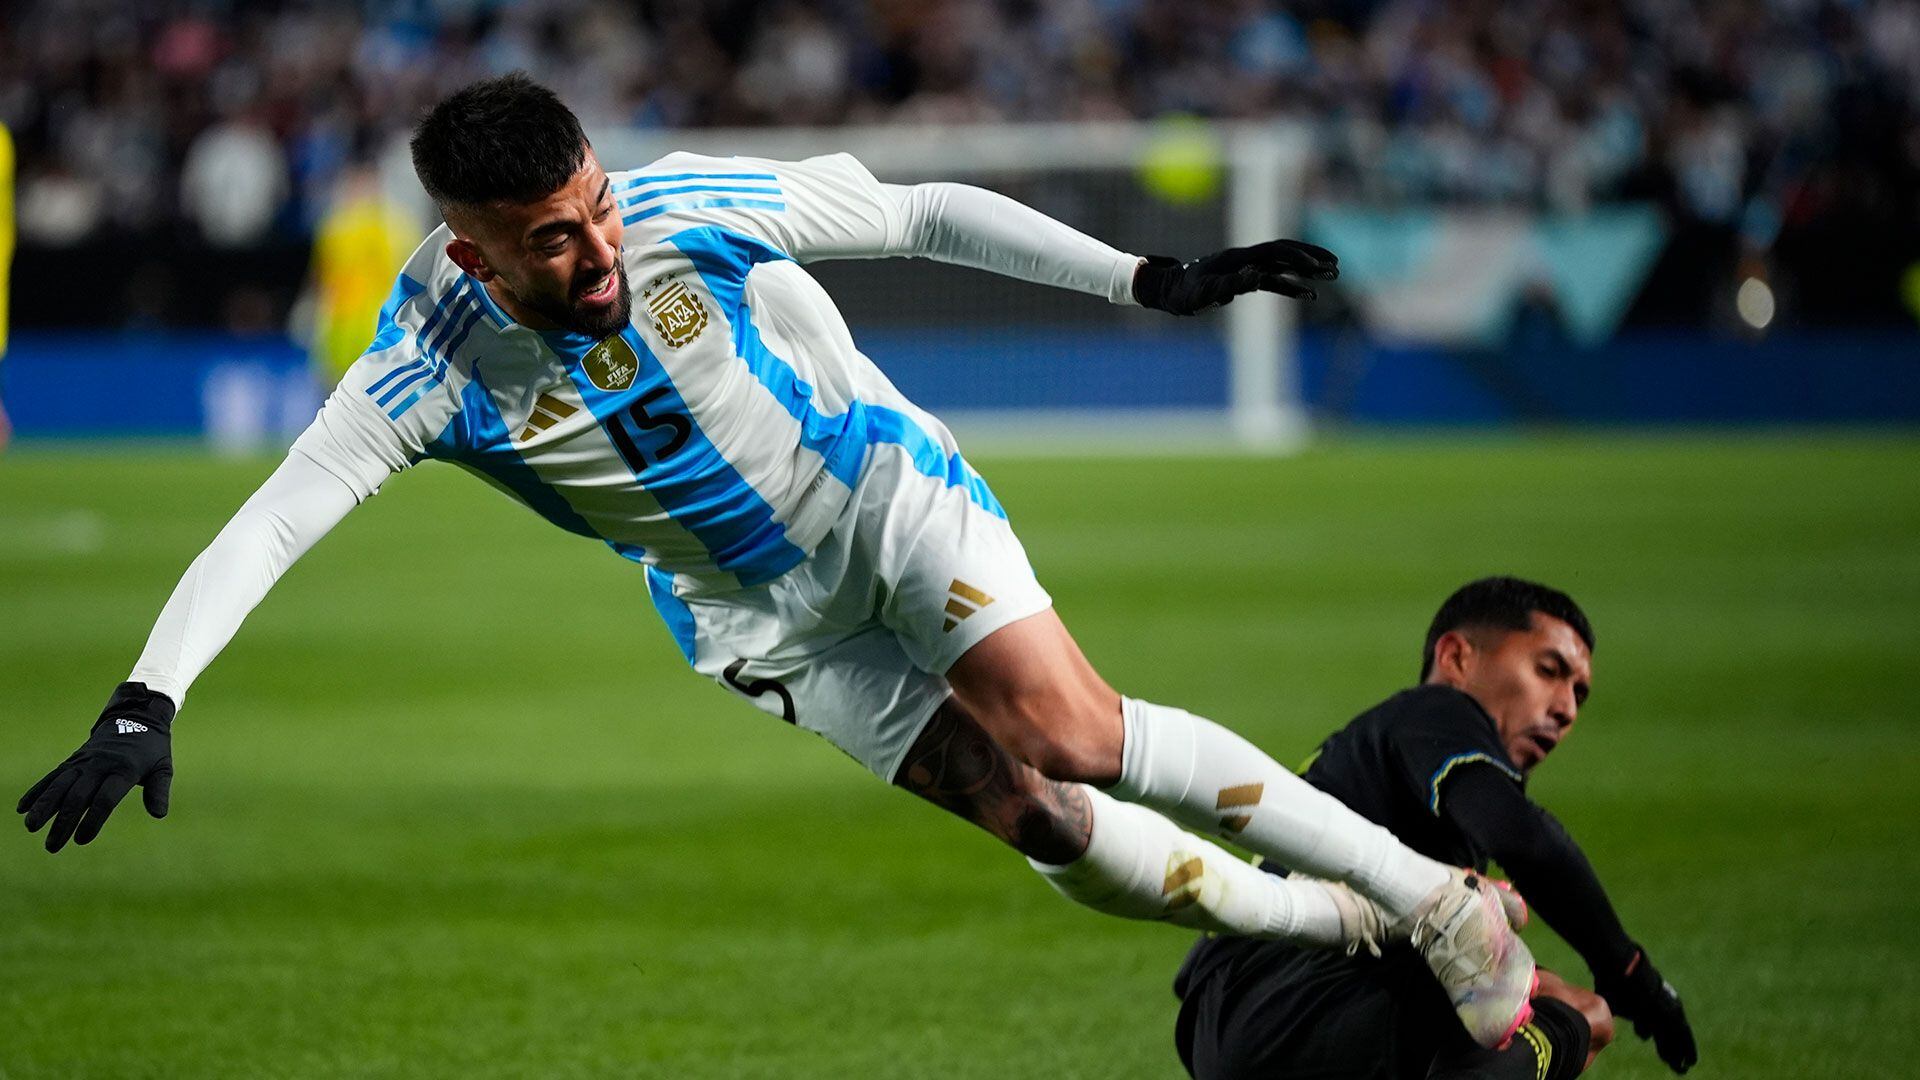 La selección argentina golea a El Salvador en el inicio de su gira amistosa